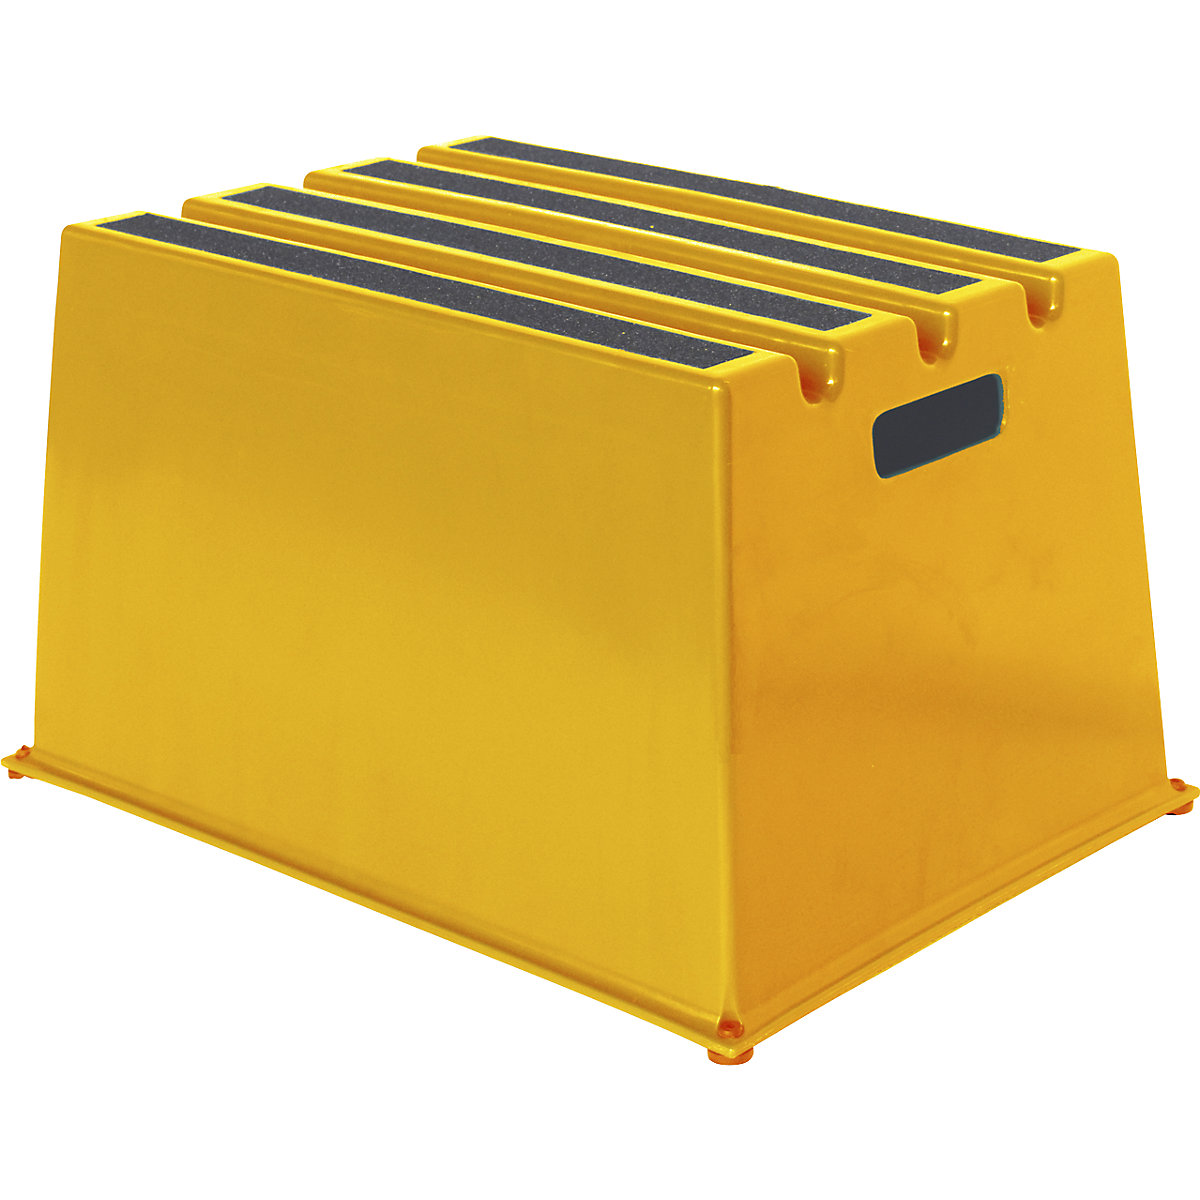 Plastične ljestve s protukliznim stepenicama – Twinco, nosivost 150 kg, 1 stepenica, u žutoj boji, od 2 kom.-2